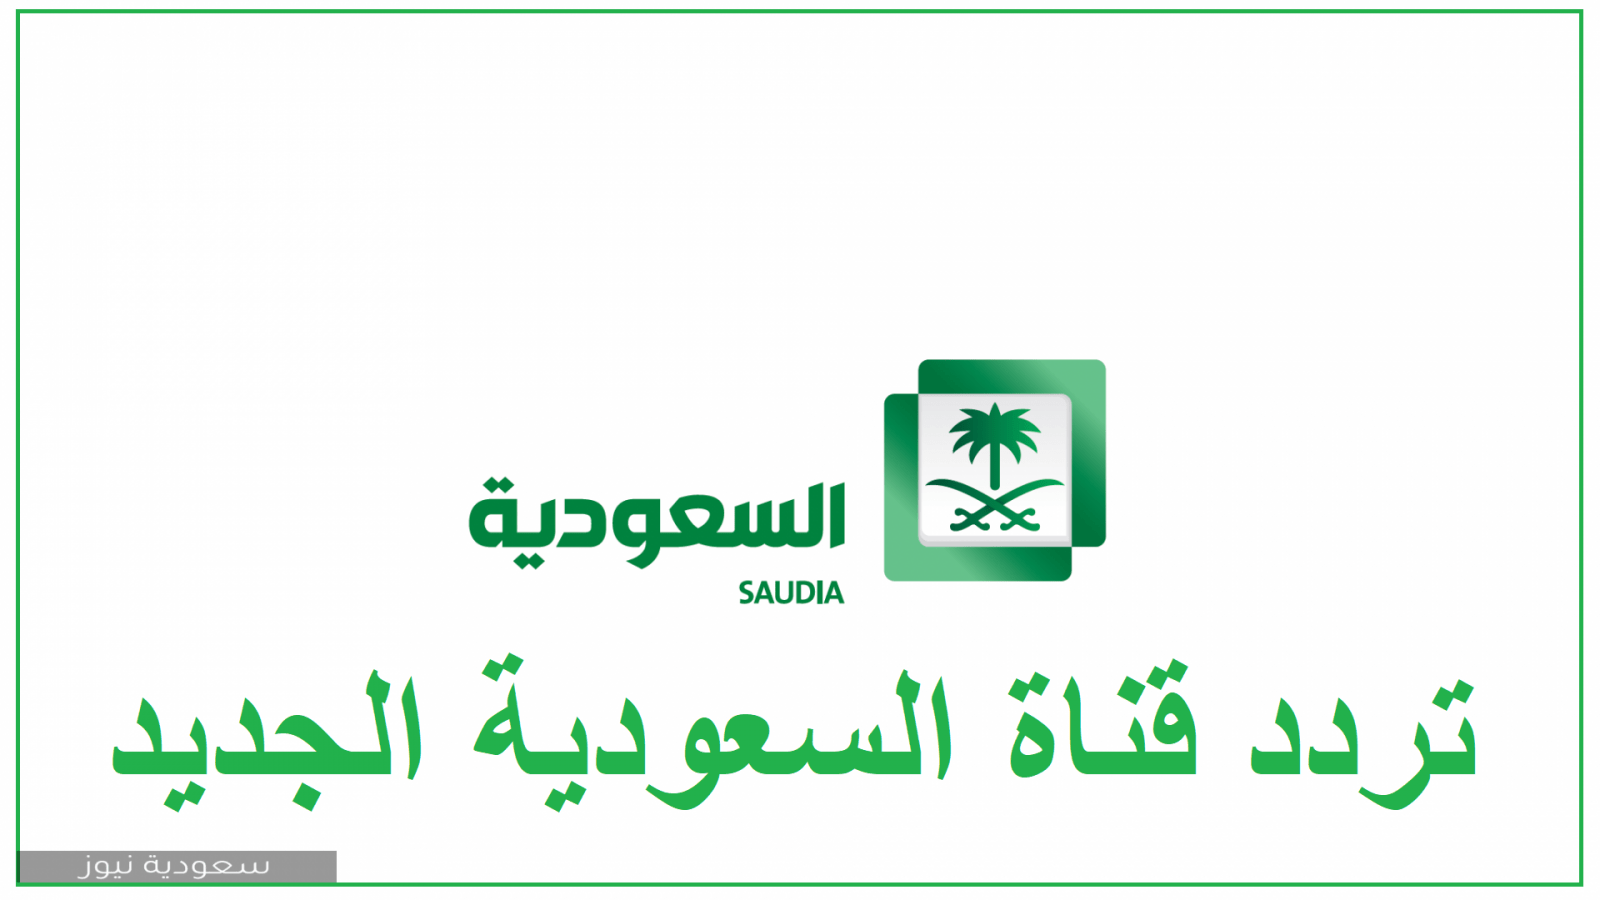 ضبط تردد قناة السعودية الرياضية الجديد Ksa الاولى والثانية على الأقمار الصناعية النايل سات والعرب سات 2020